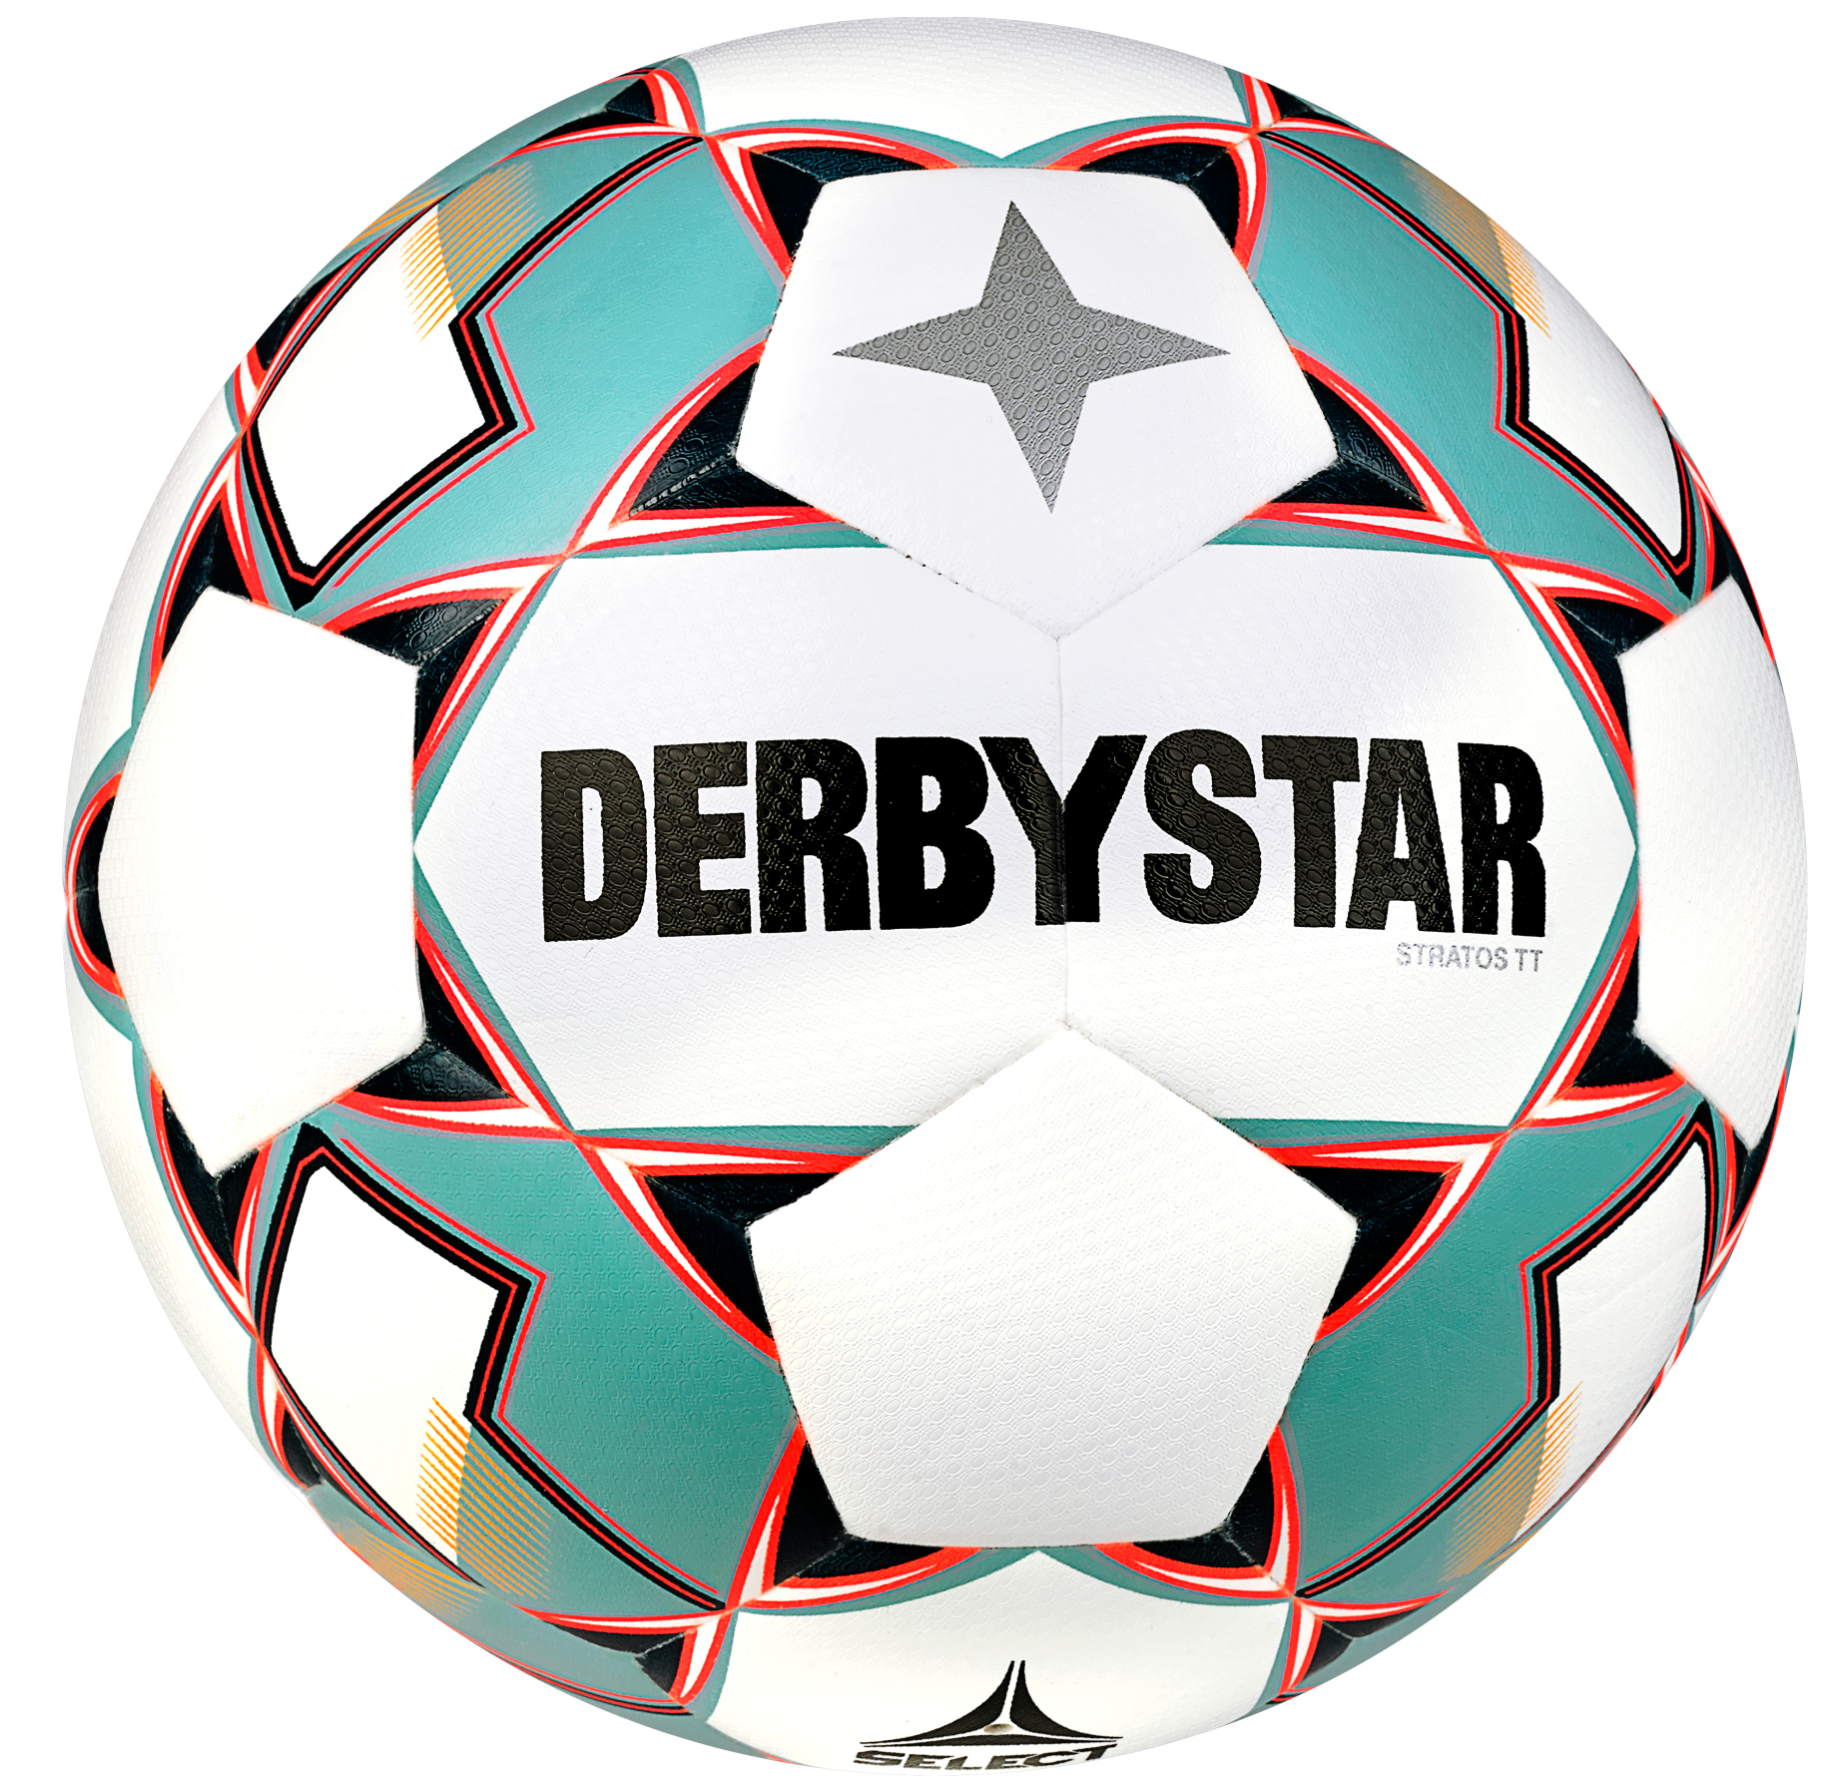 Balance ball Derbystar Stratos TT v23 Trainingsball